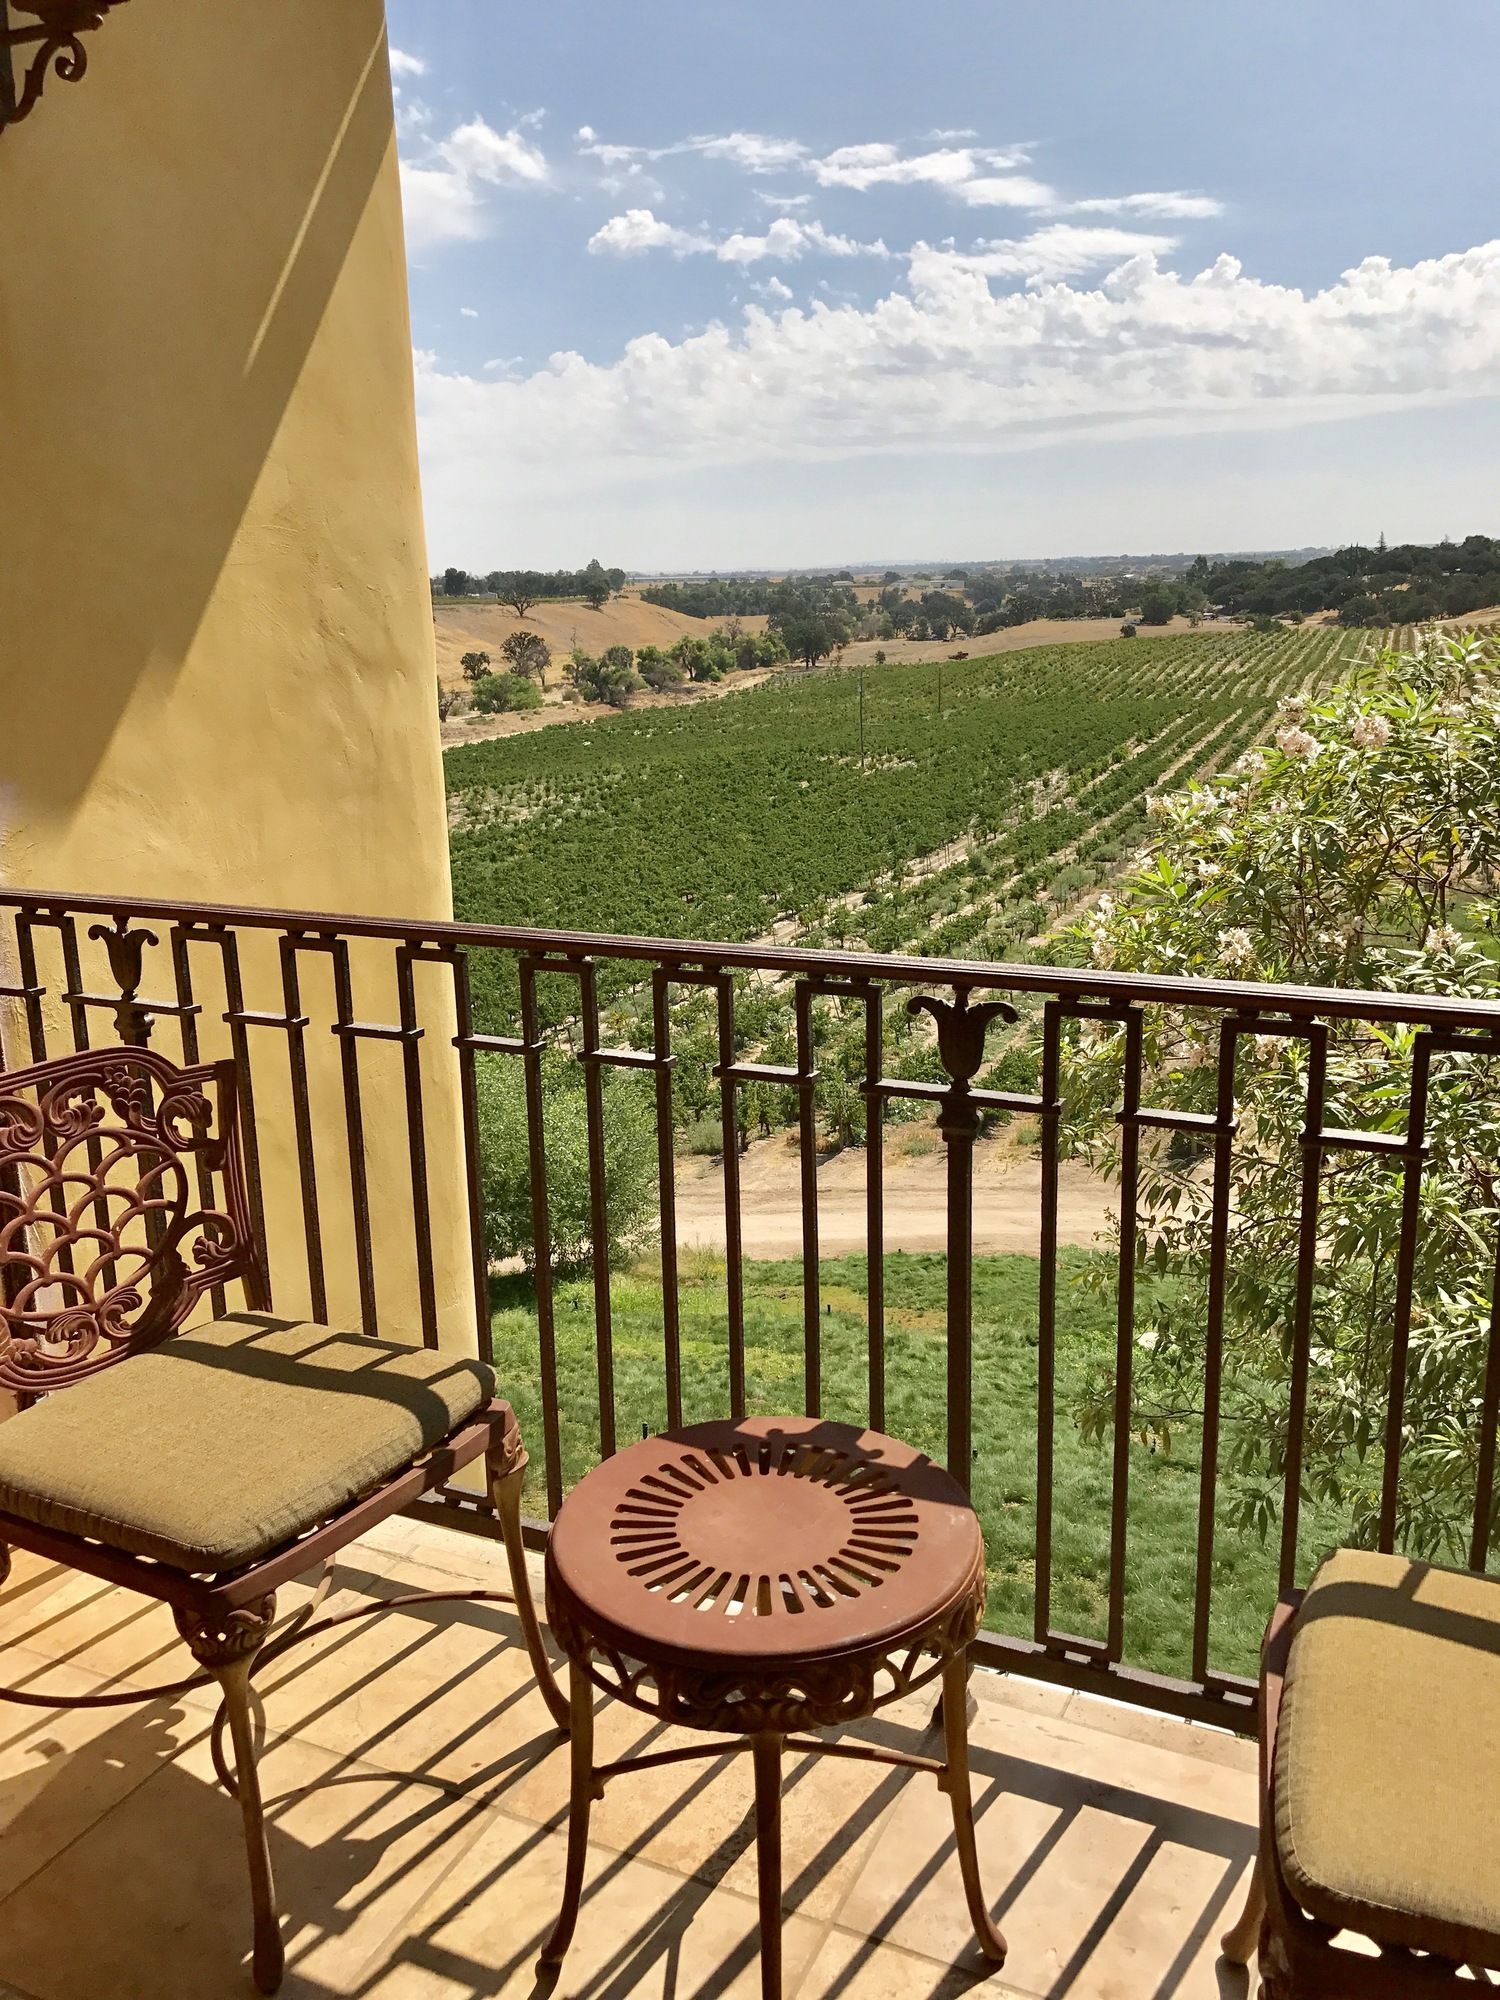 CaliPaso Winery & Villa